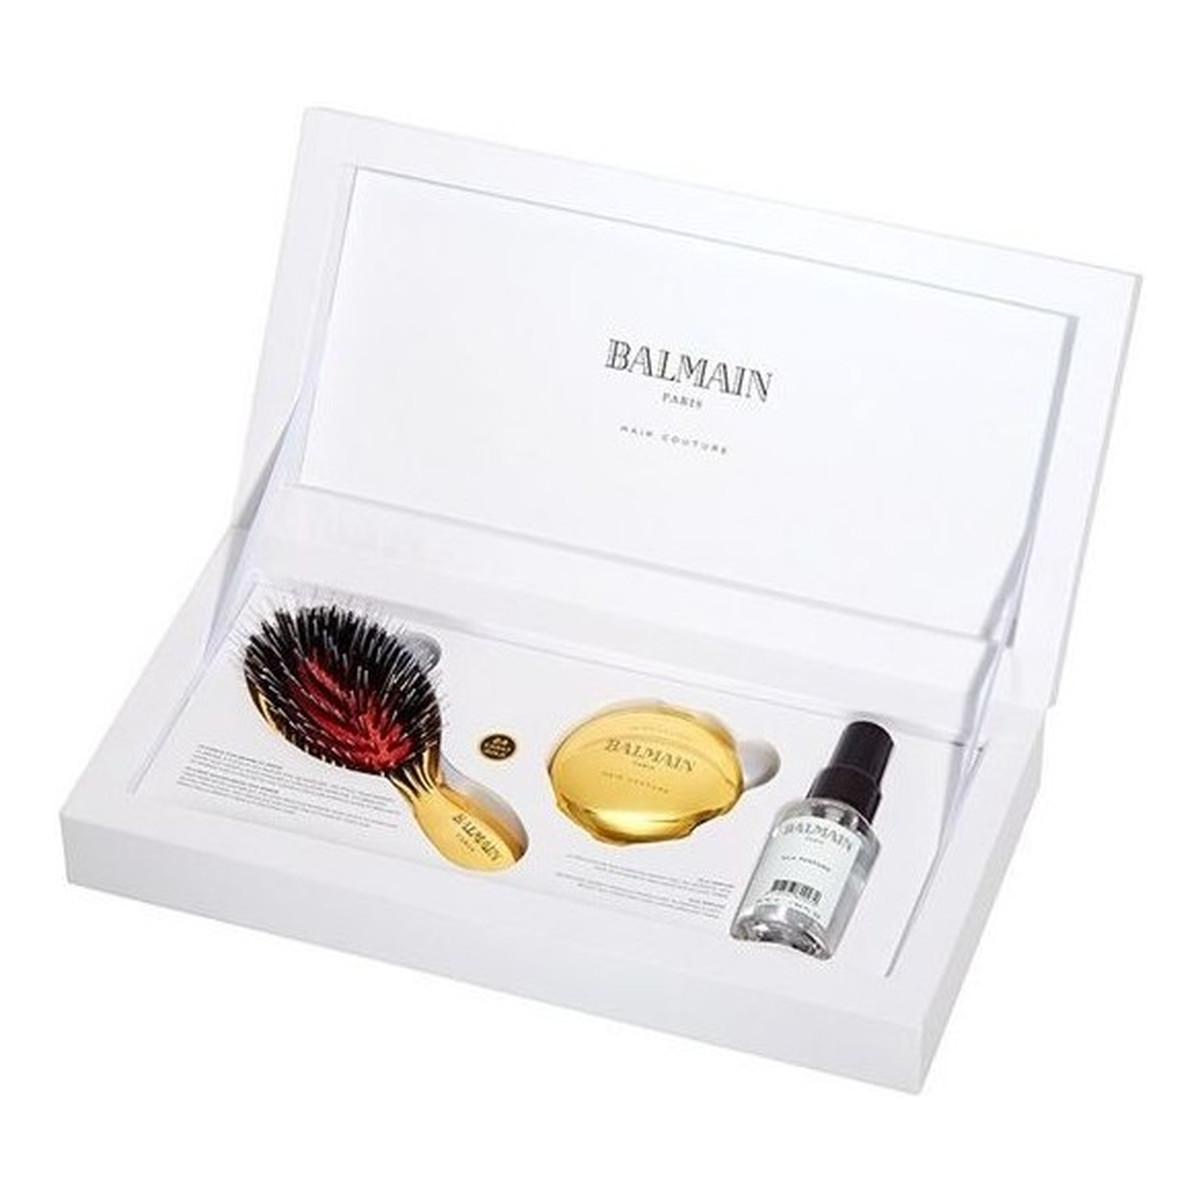 Balmain Luxurious Golden Spa Zestaw mini złota szczotka do pielęgnacji + złote lusterko + Silk Perfume 50ml